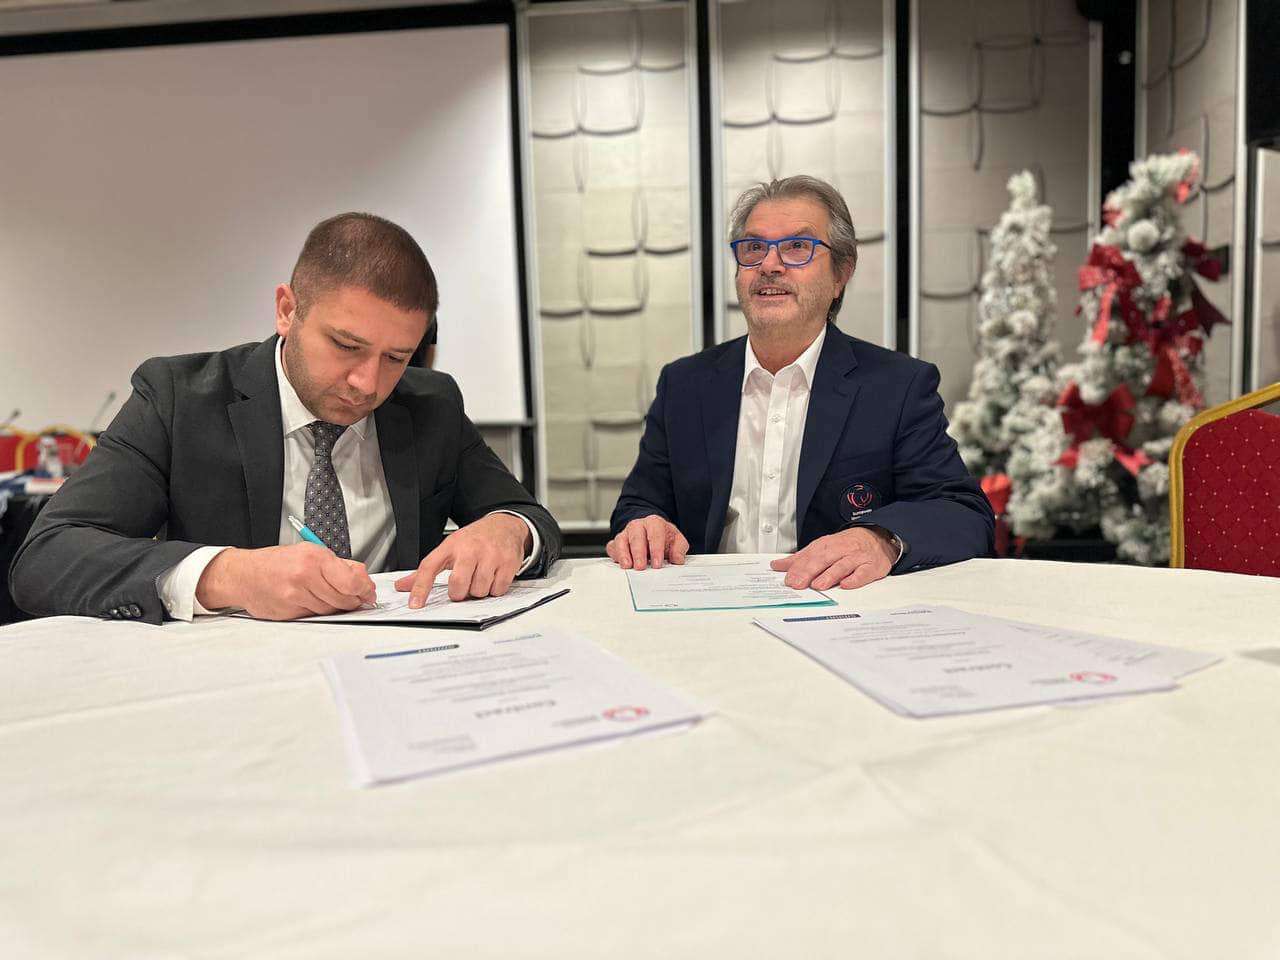 Ստորագրվել է 2027 թվականին Երևանում կայանալիք սպորտային մարմնամարզության Եվրոպայի առաջնության պայմանագիրը